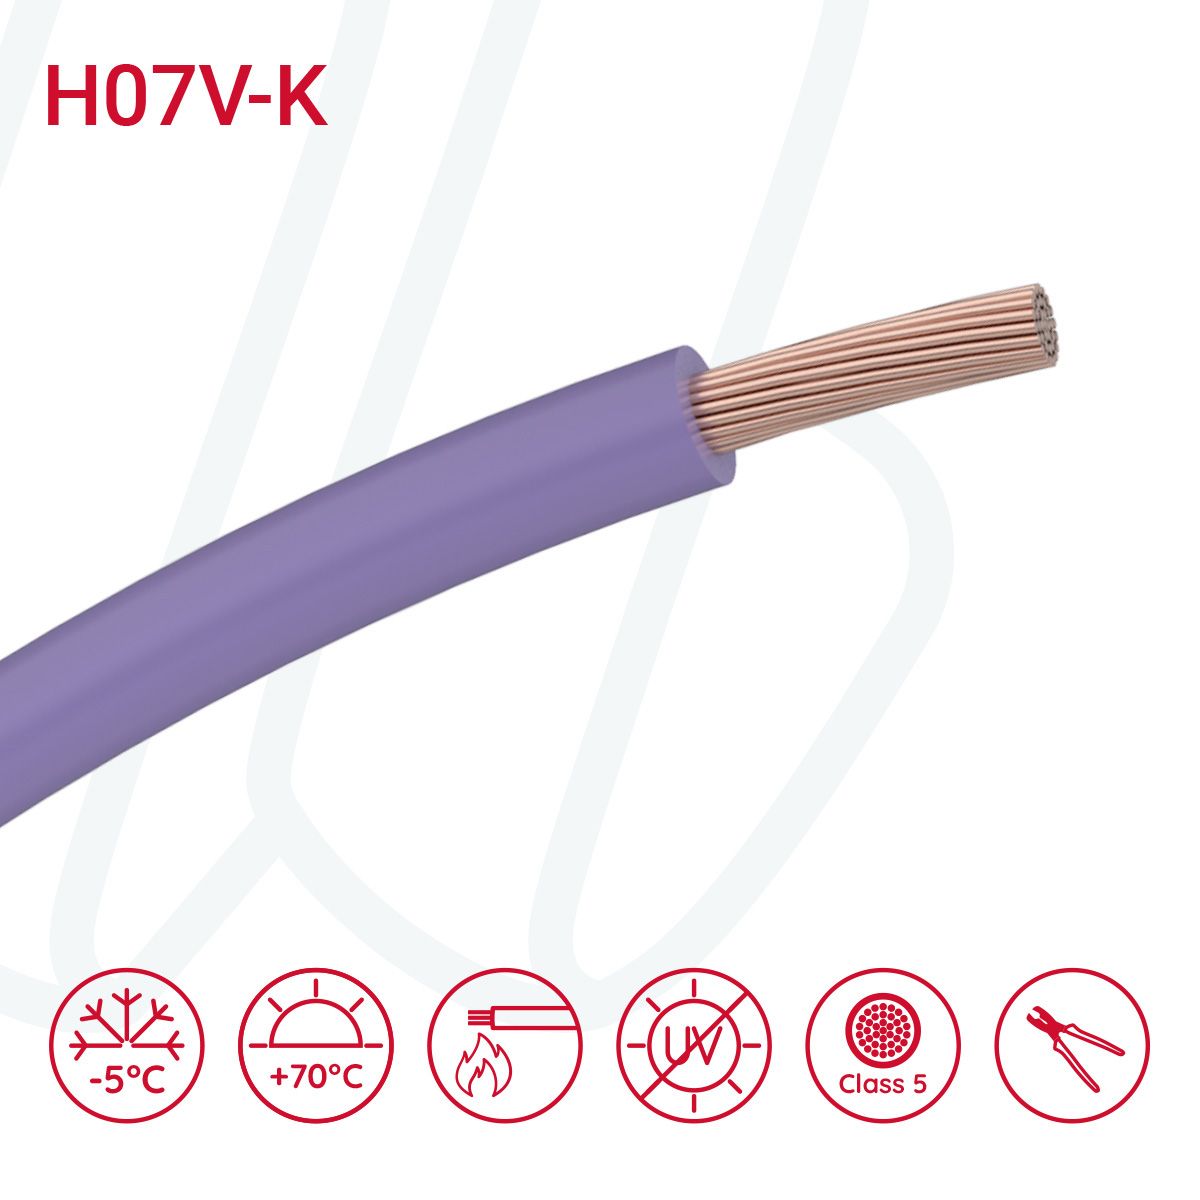 Провід монтажний гнучкий X07V-K 10 мм² фіолетовий, 01, 10